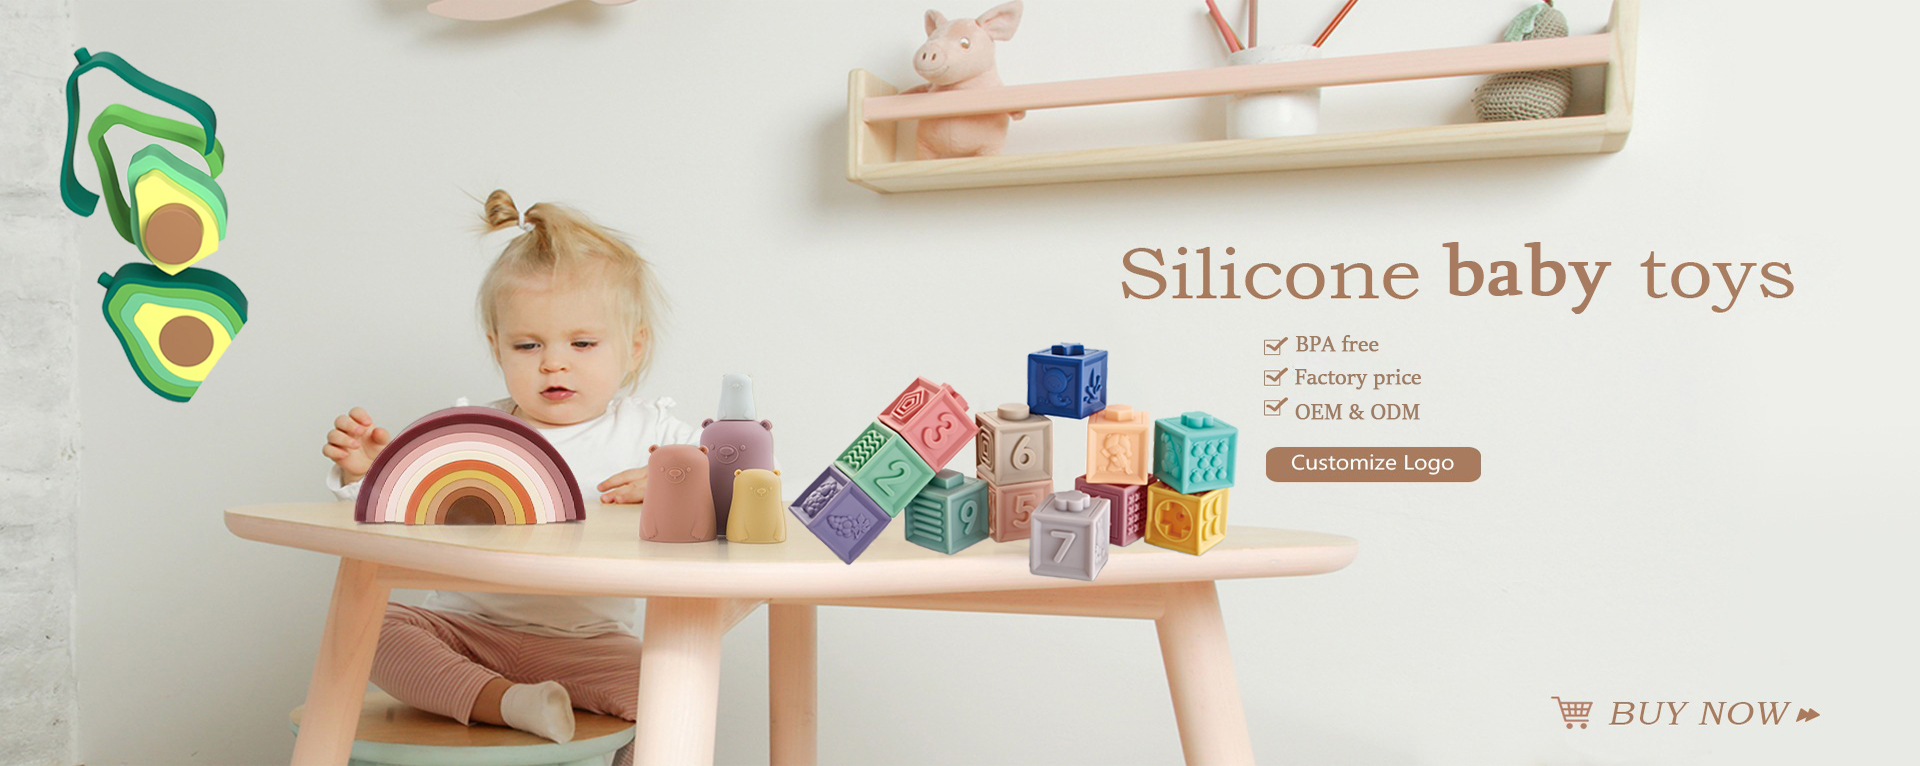 mainan bayi silikon